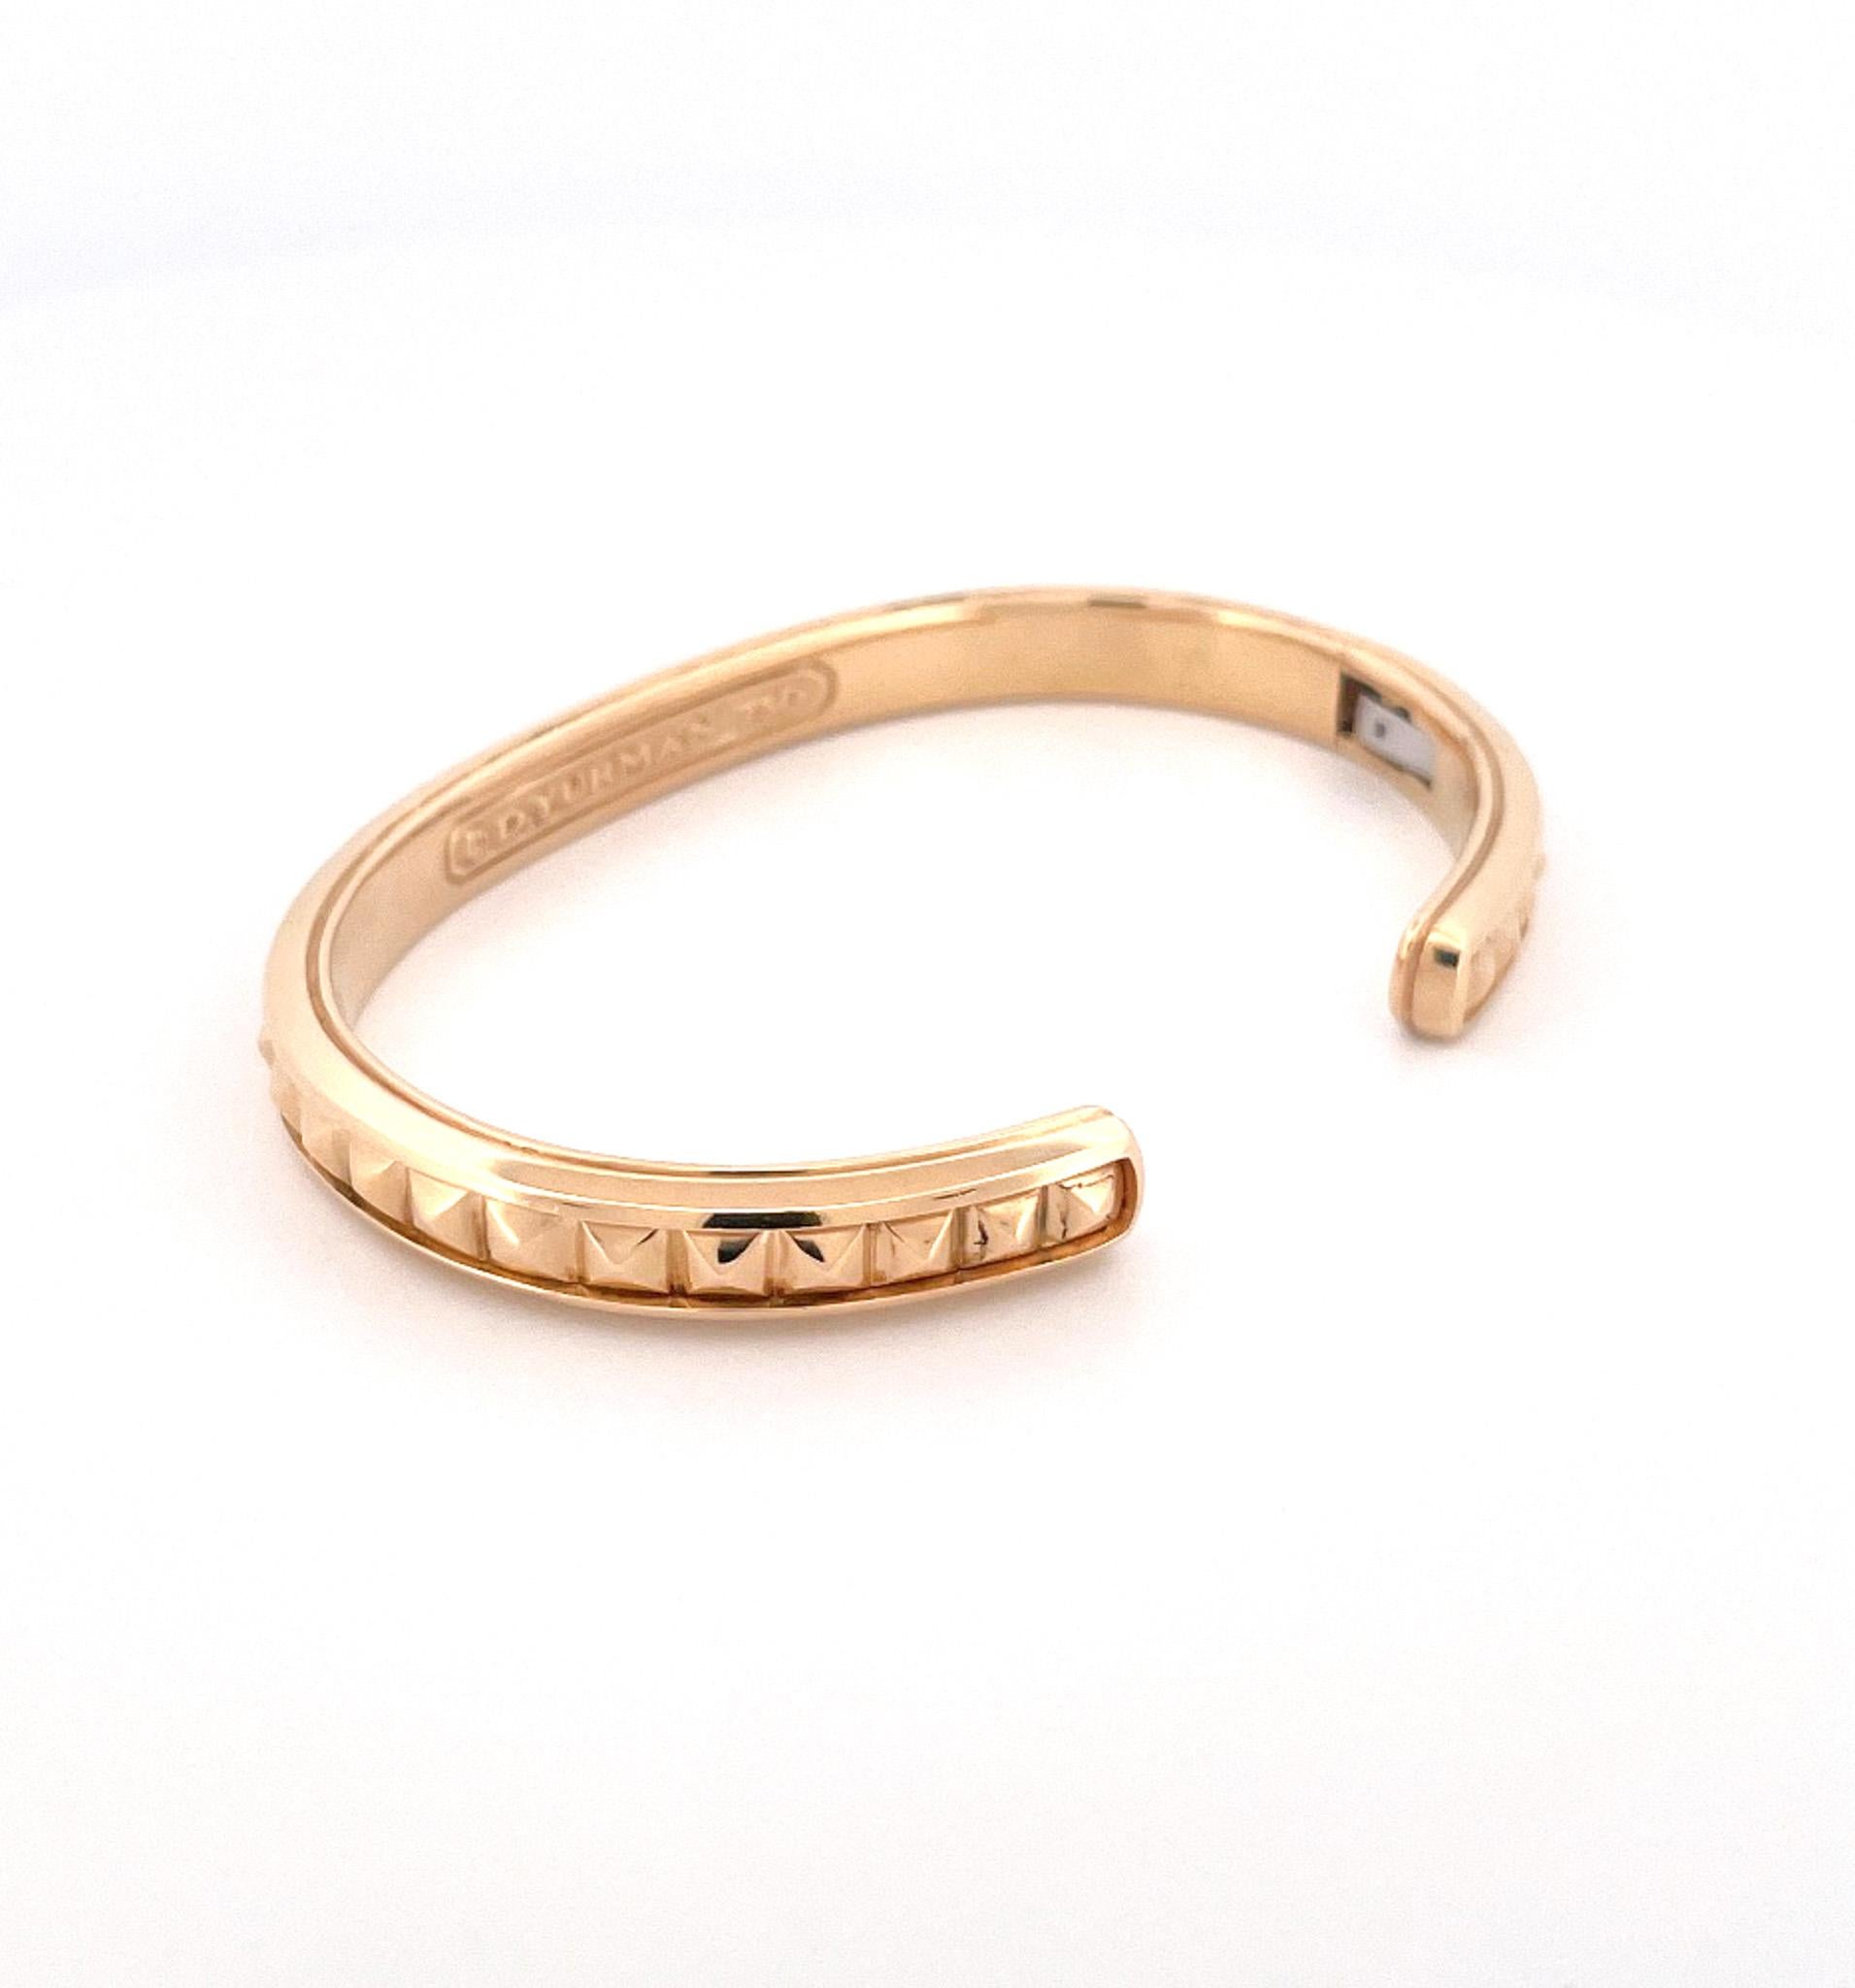 Du créateur David Yurman, vers les années 1990, bracelet manchette pour homme en or jaune 18 carats. Ce bracelet est orné d'un motif strié le long de la rangée centrale. Ce bracelet est un petit bracelet pour homme mesurant 9 pouces avec une